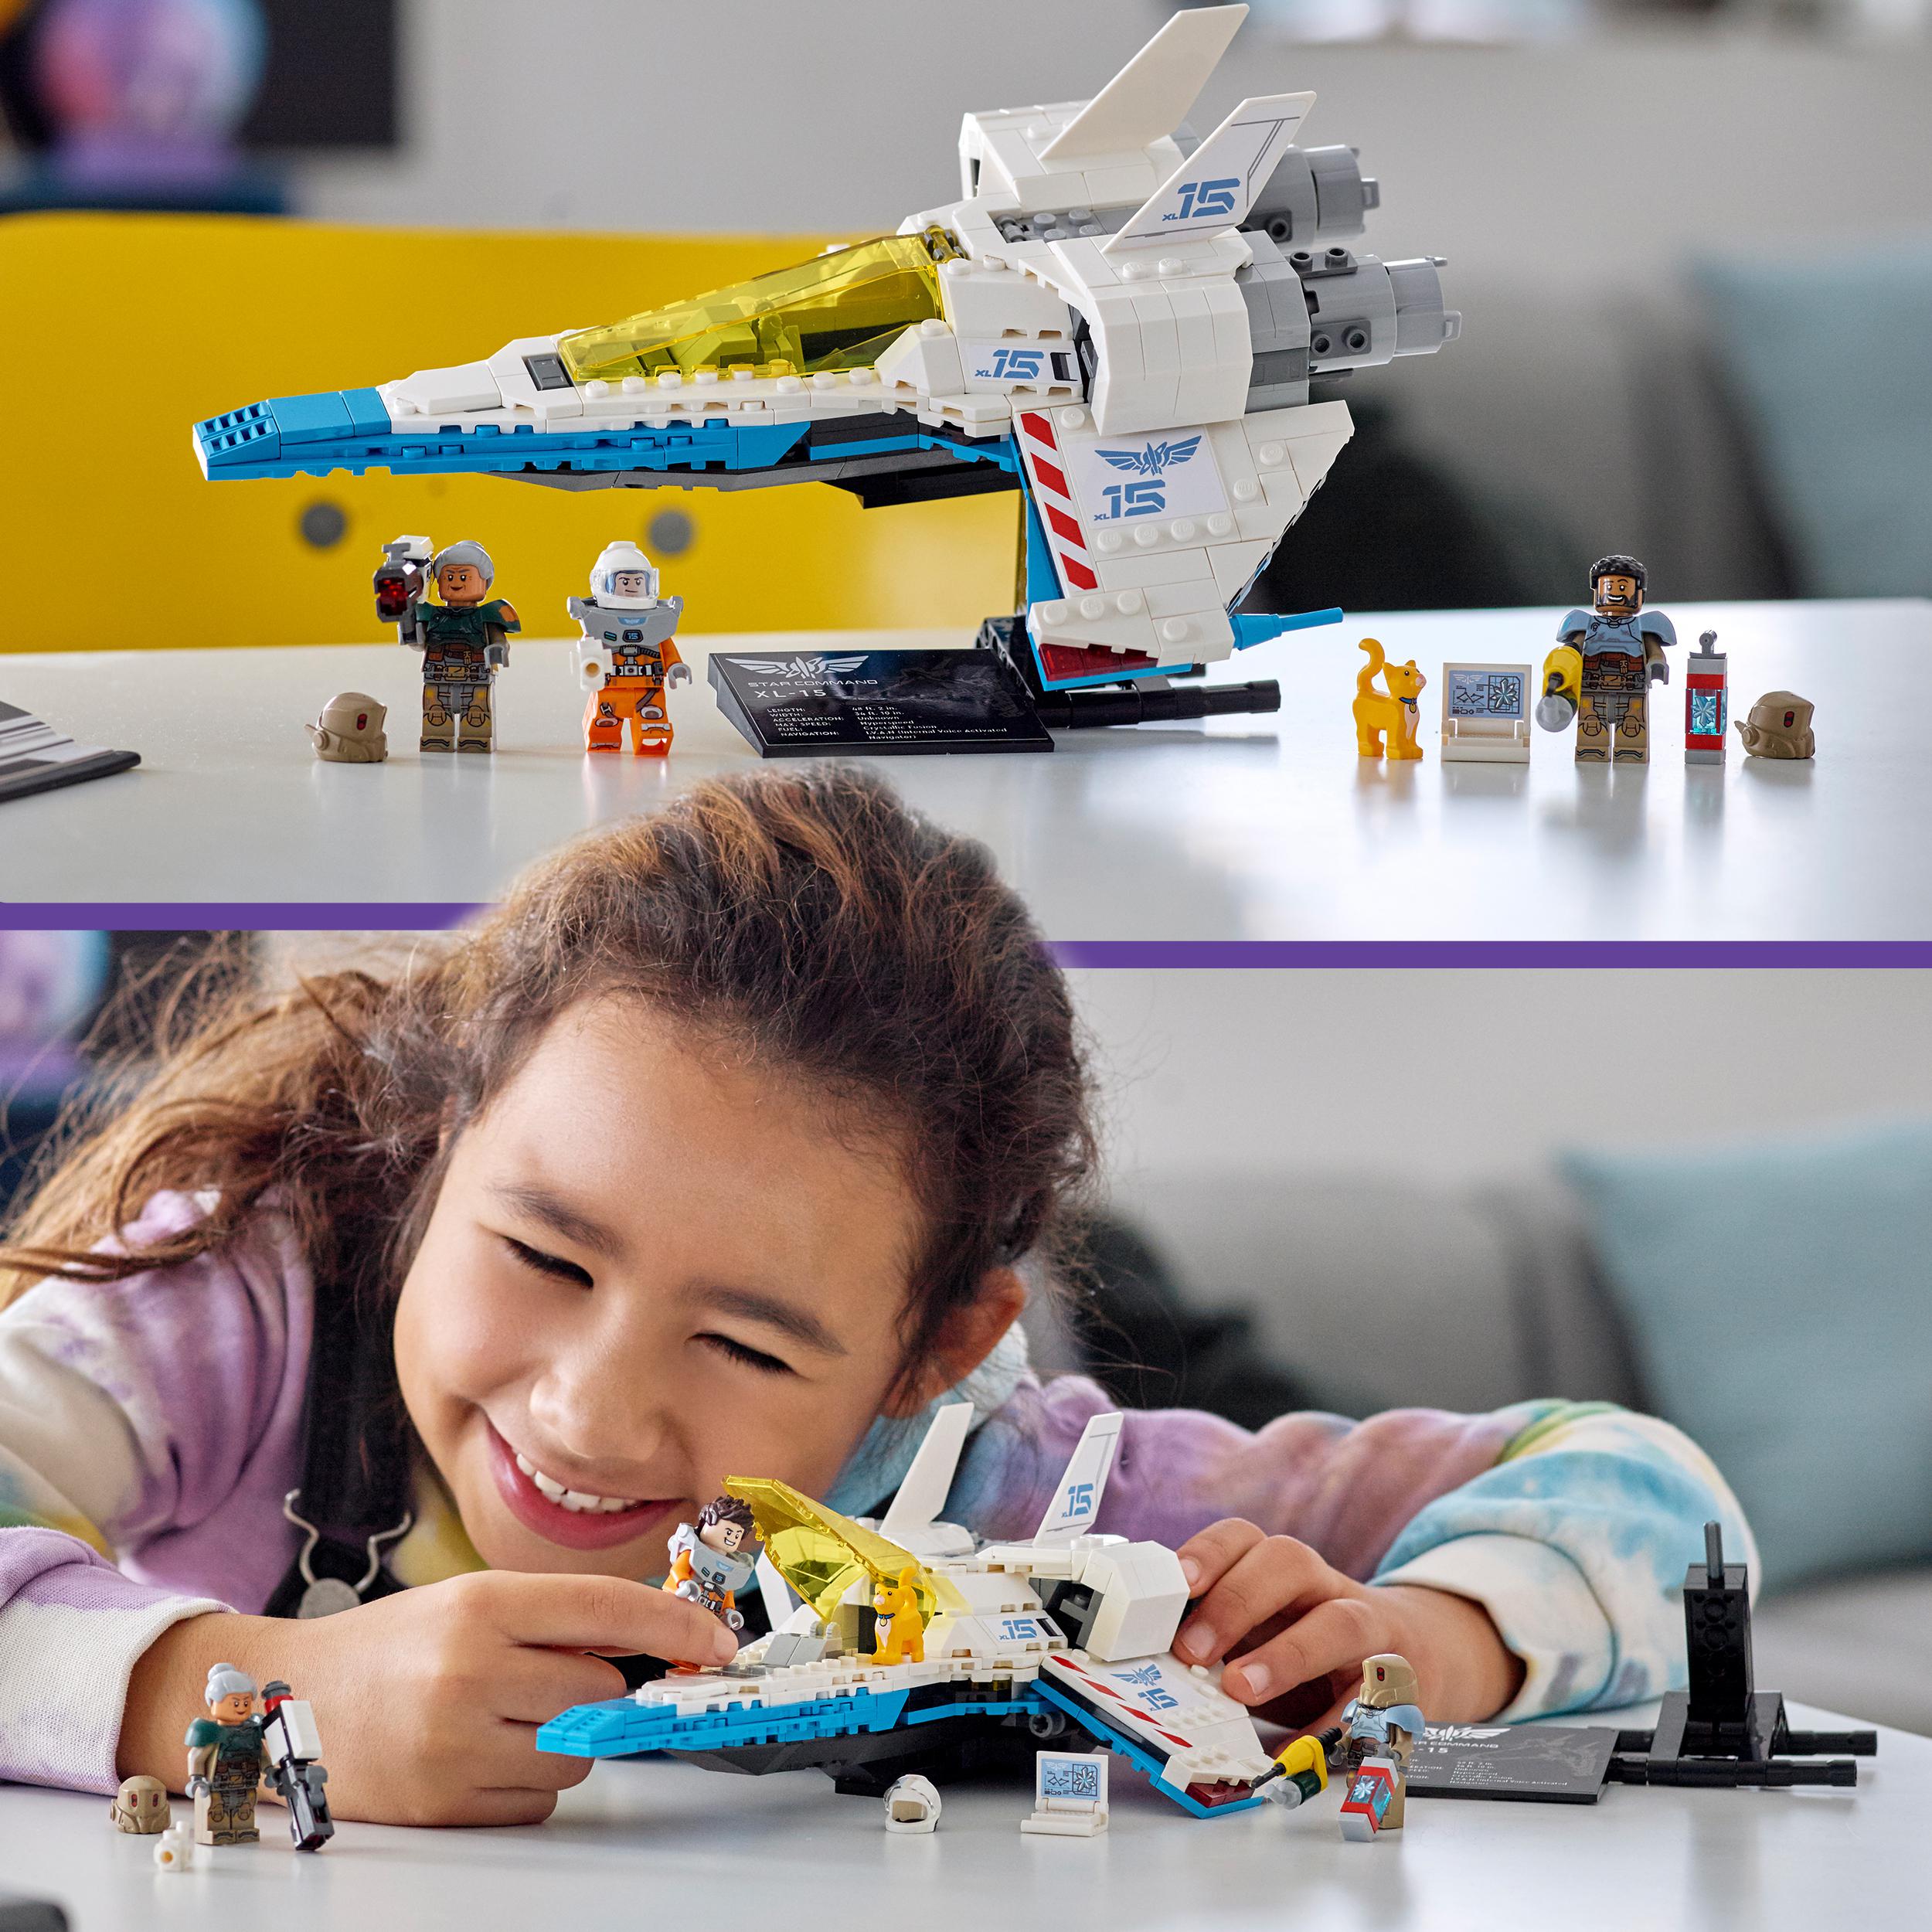 LEGO Disney Pixar Lightyear  XL-15 Spaceship 76832